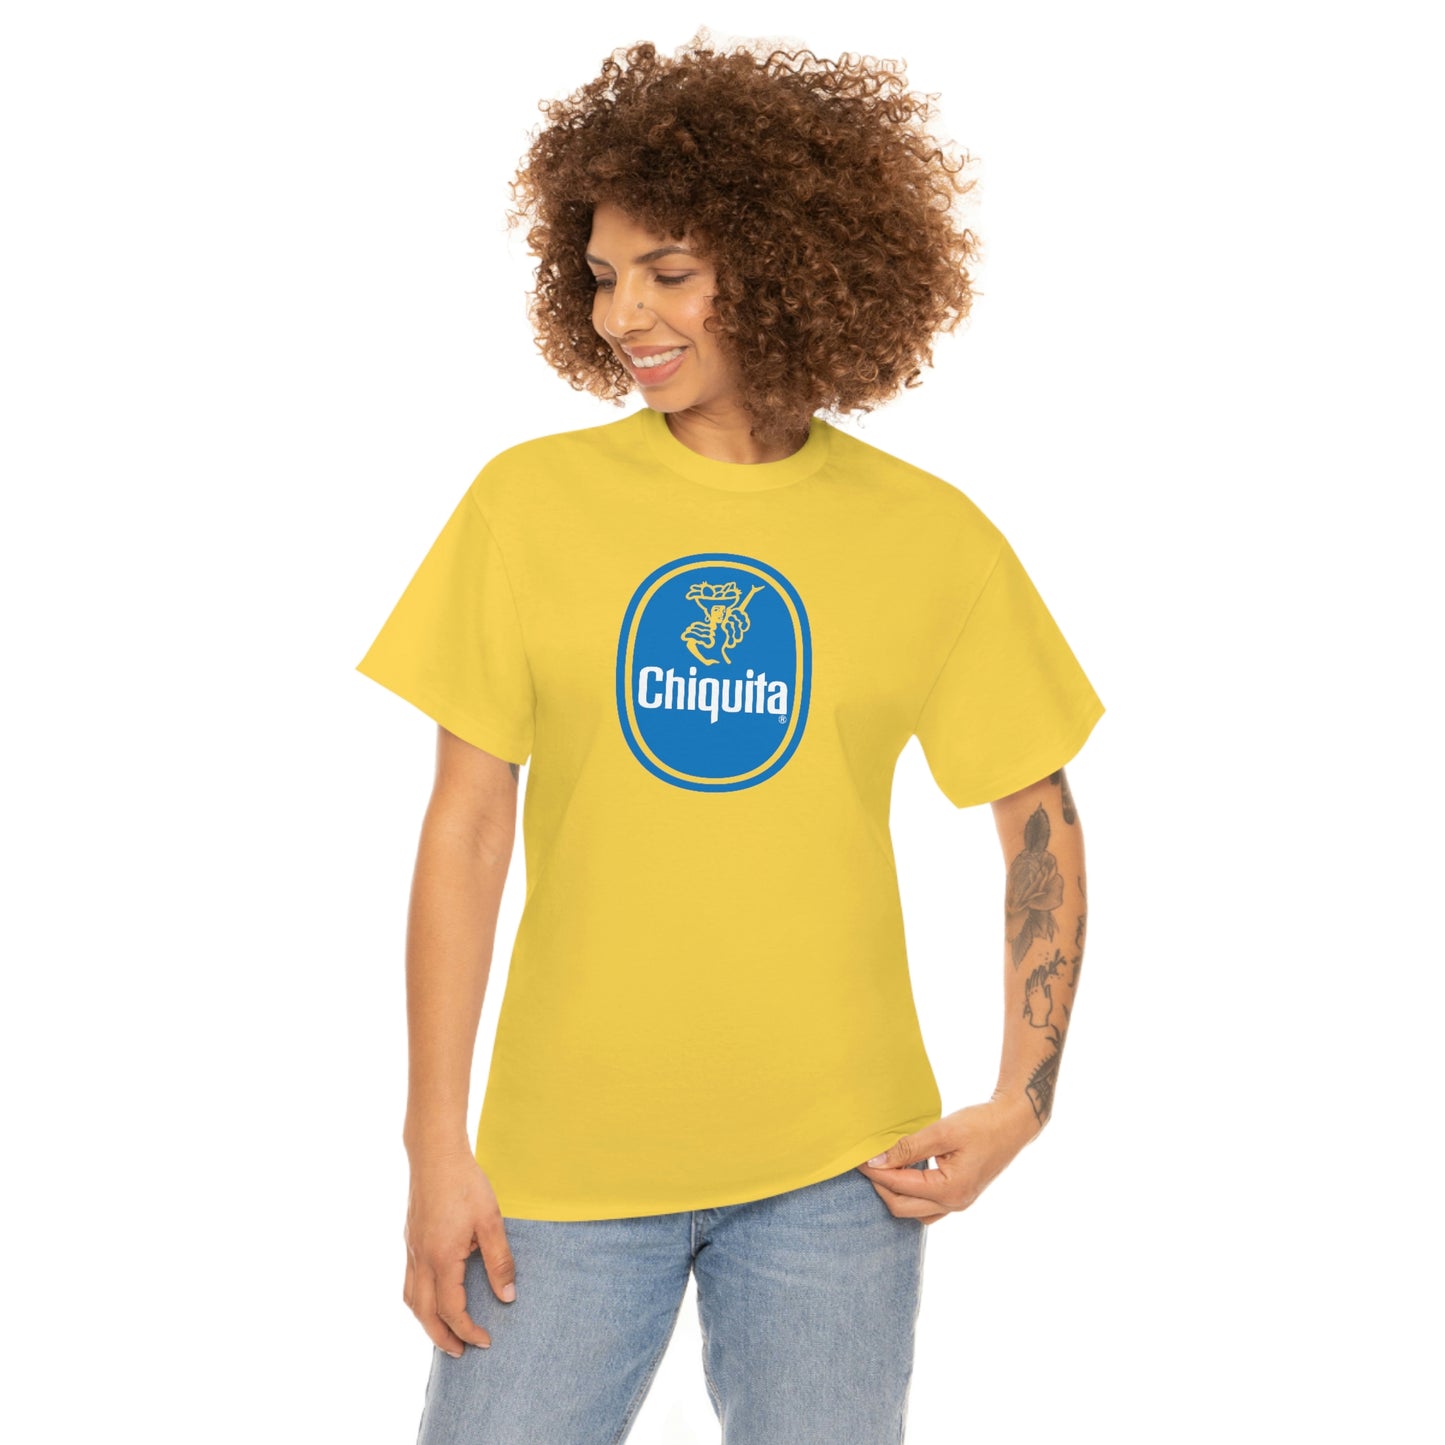 Chiquita T-Shirt